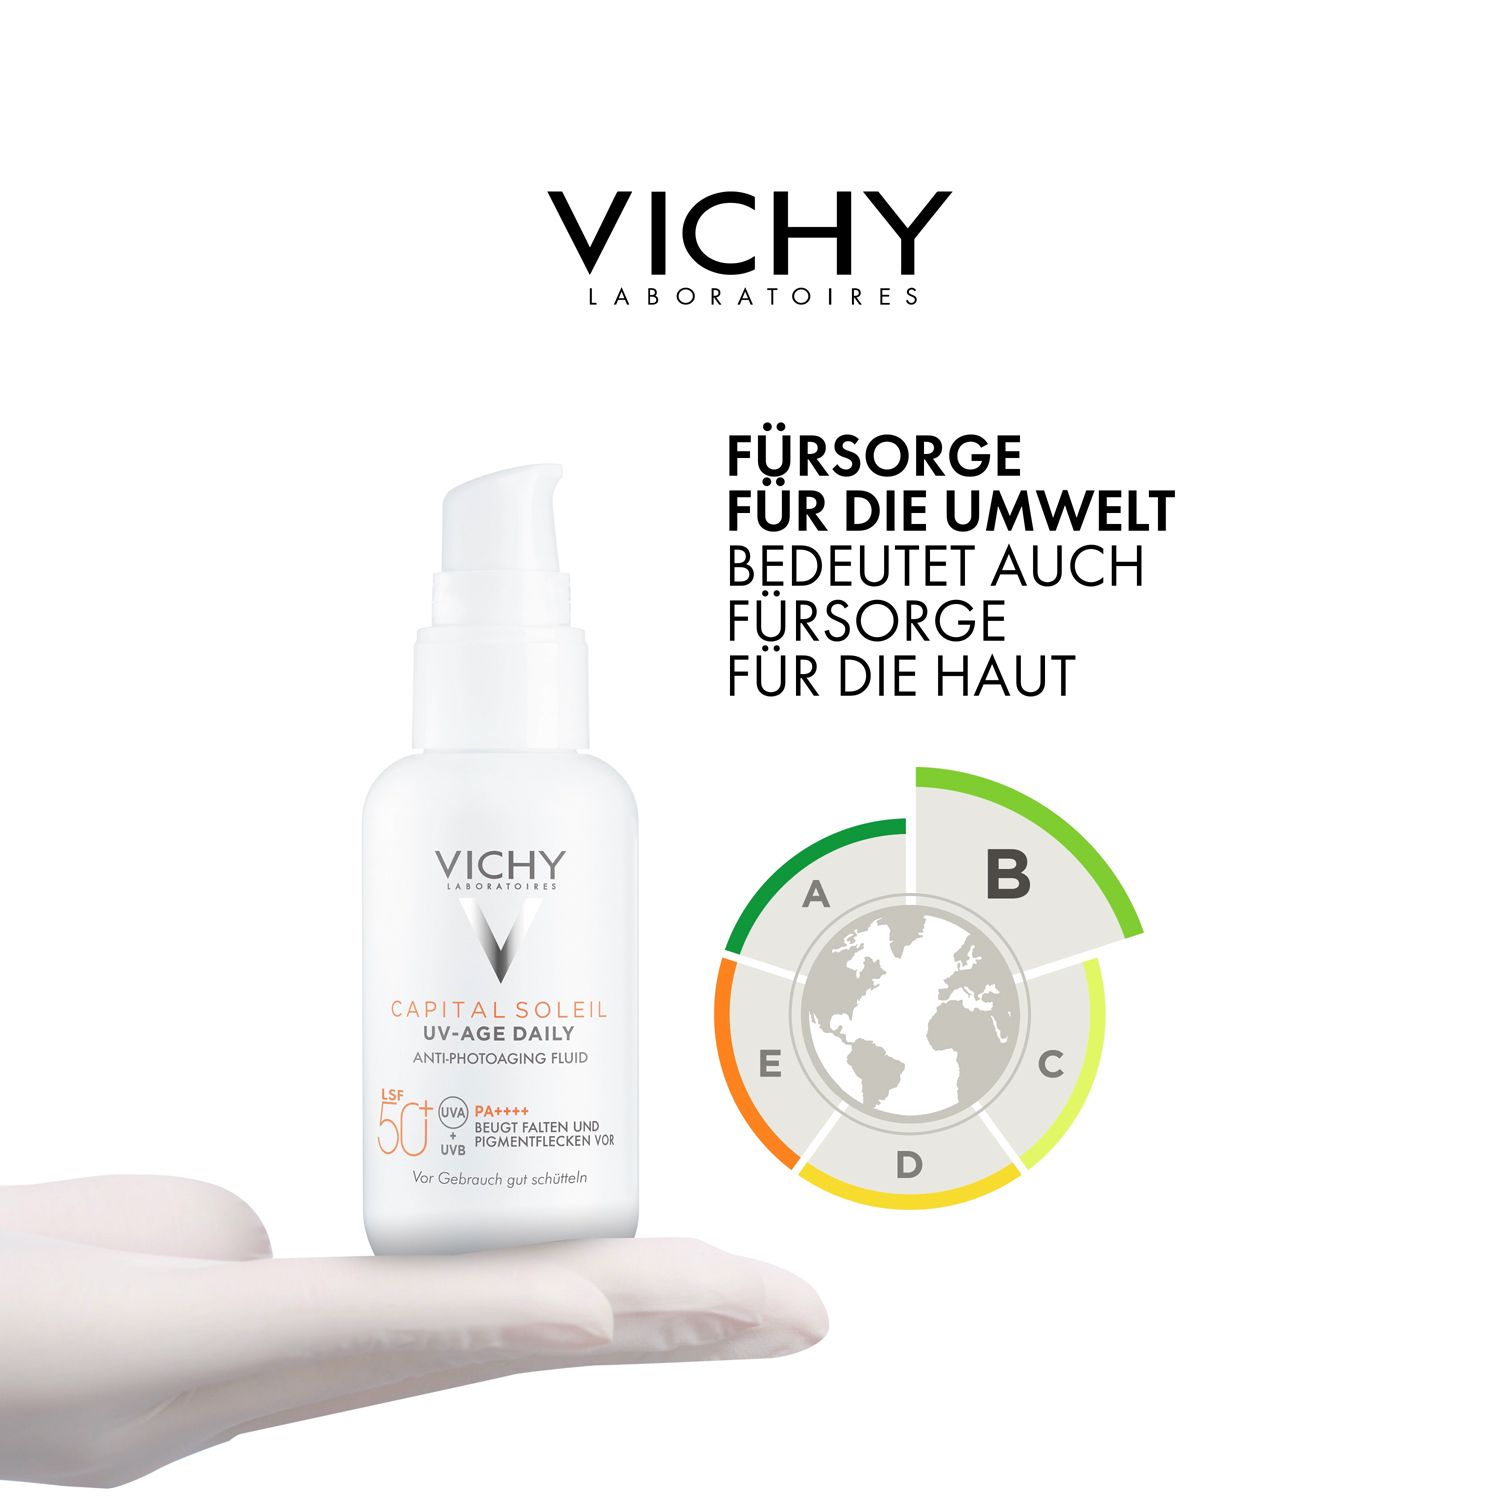 Vichy CAPITAL SOLEIL UV-Age Daily LSF 50+ Sonnencreme für das Gesicht